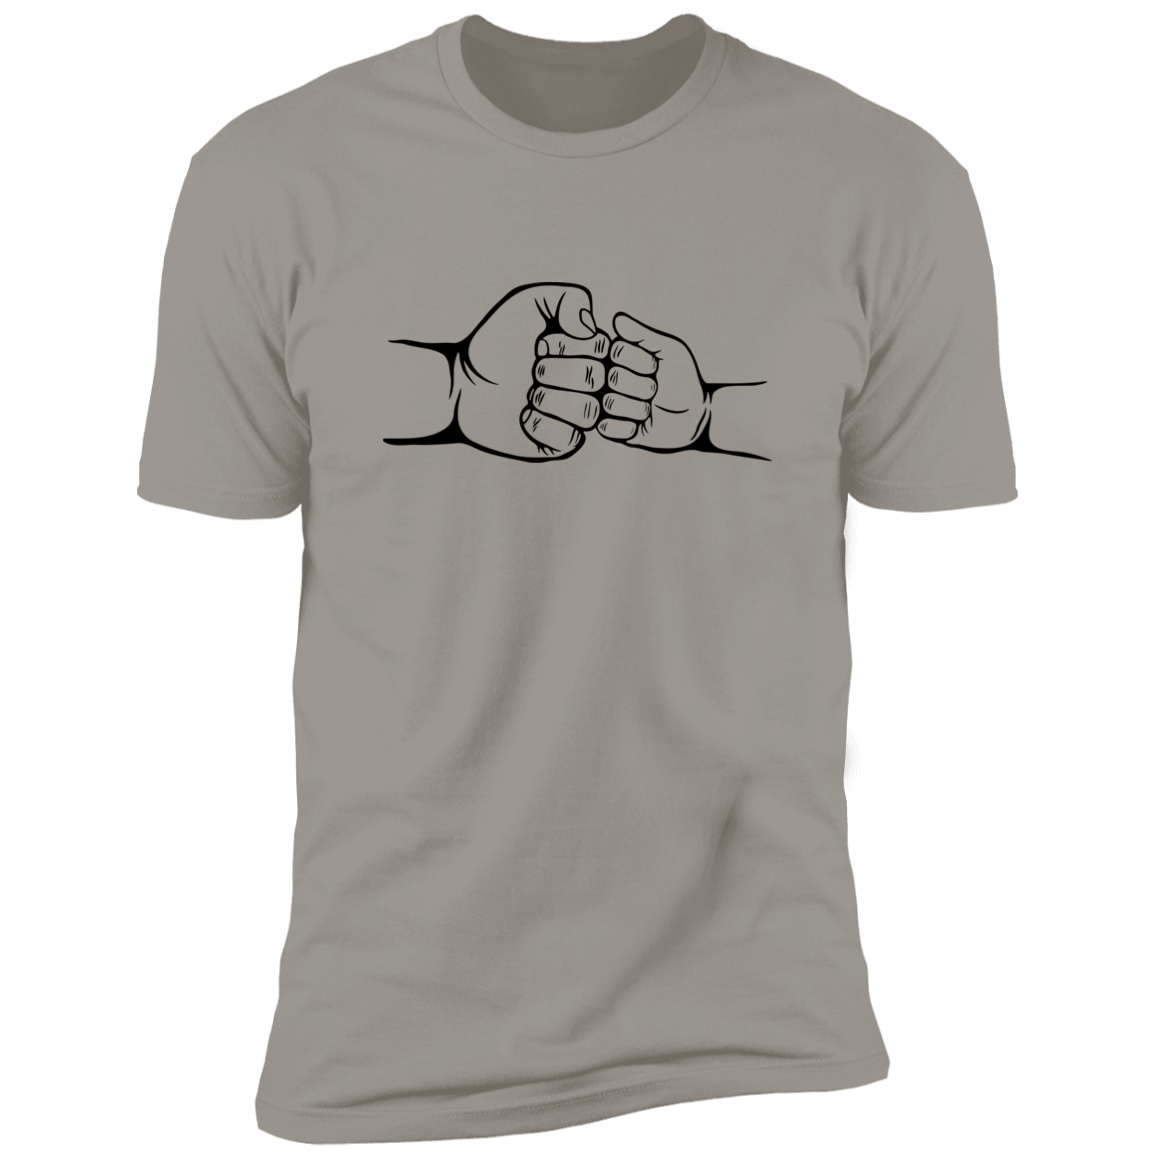 Light Grey Shirt Short Sleeve - Fist Bump 2